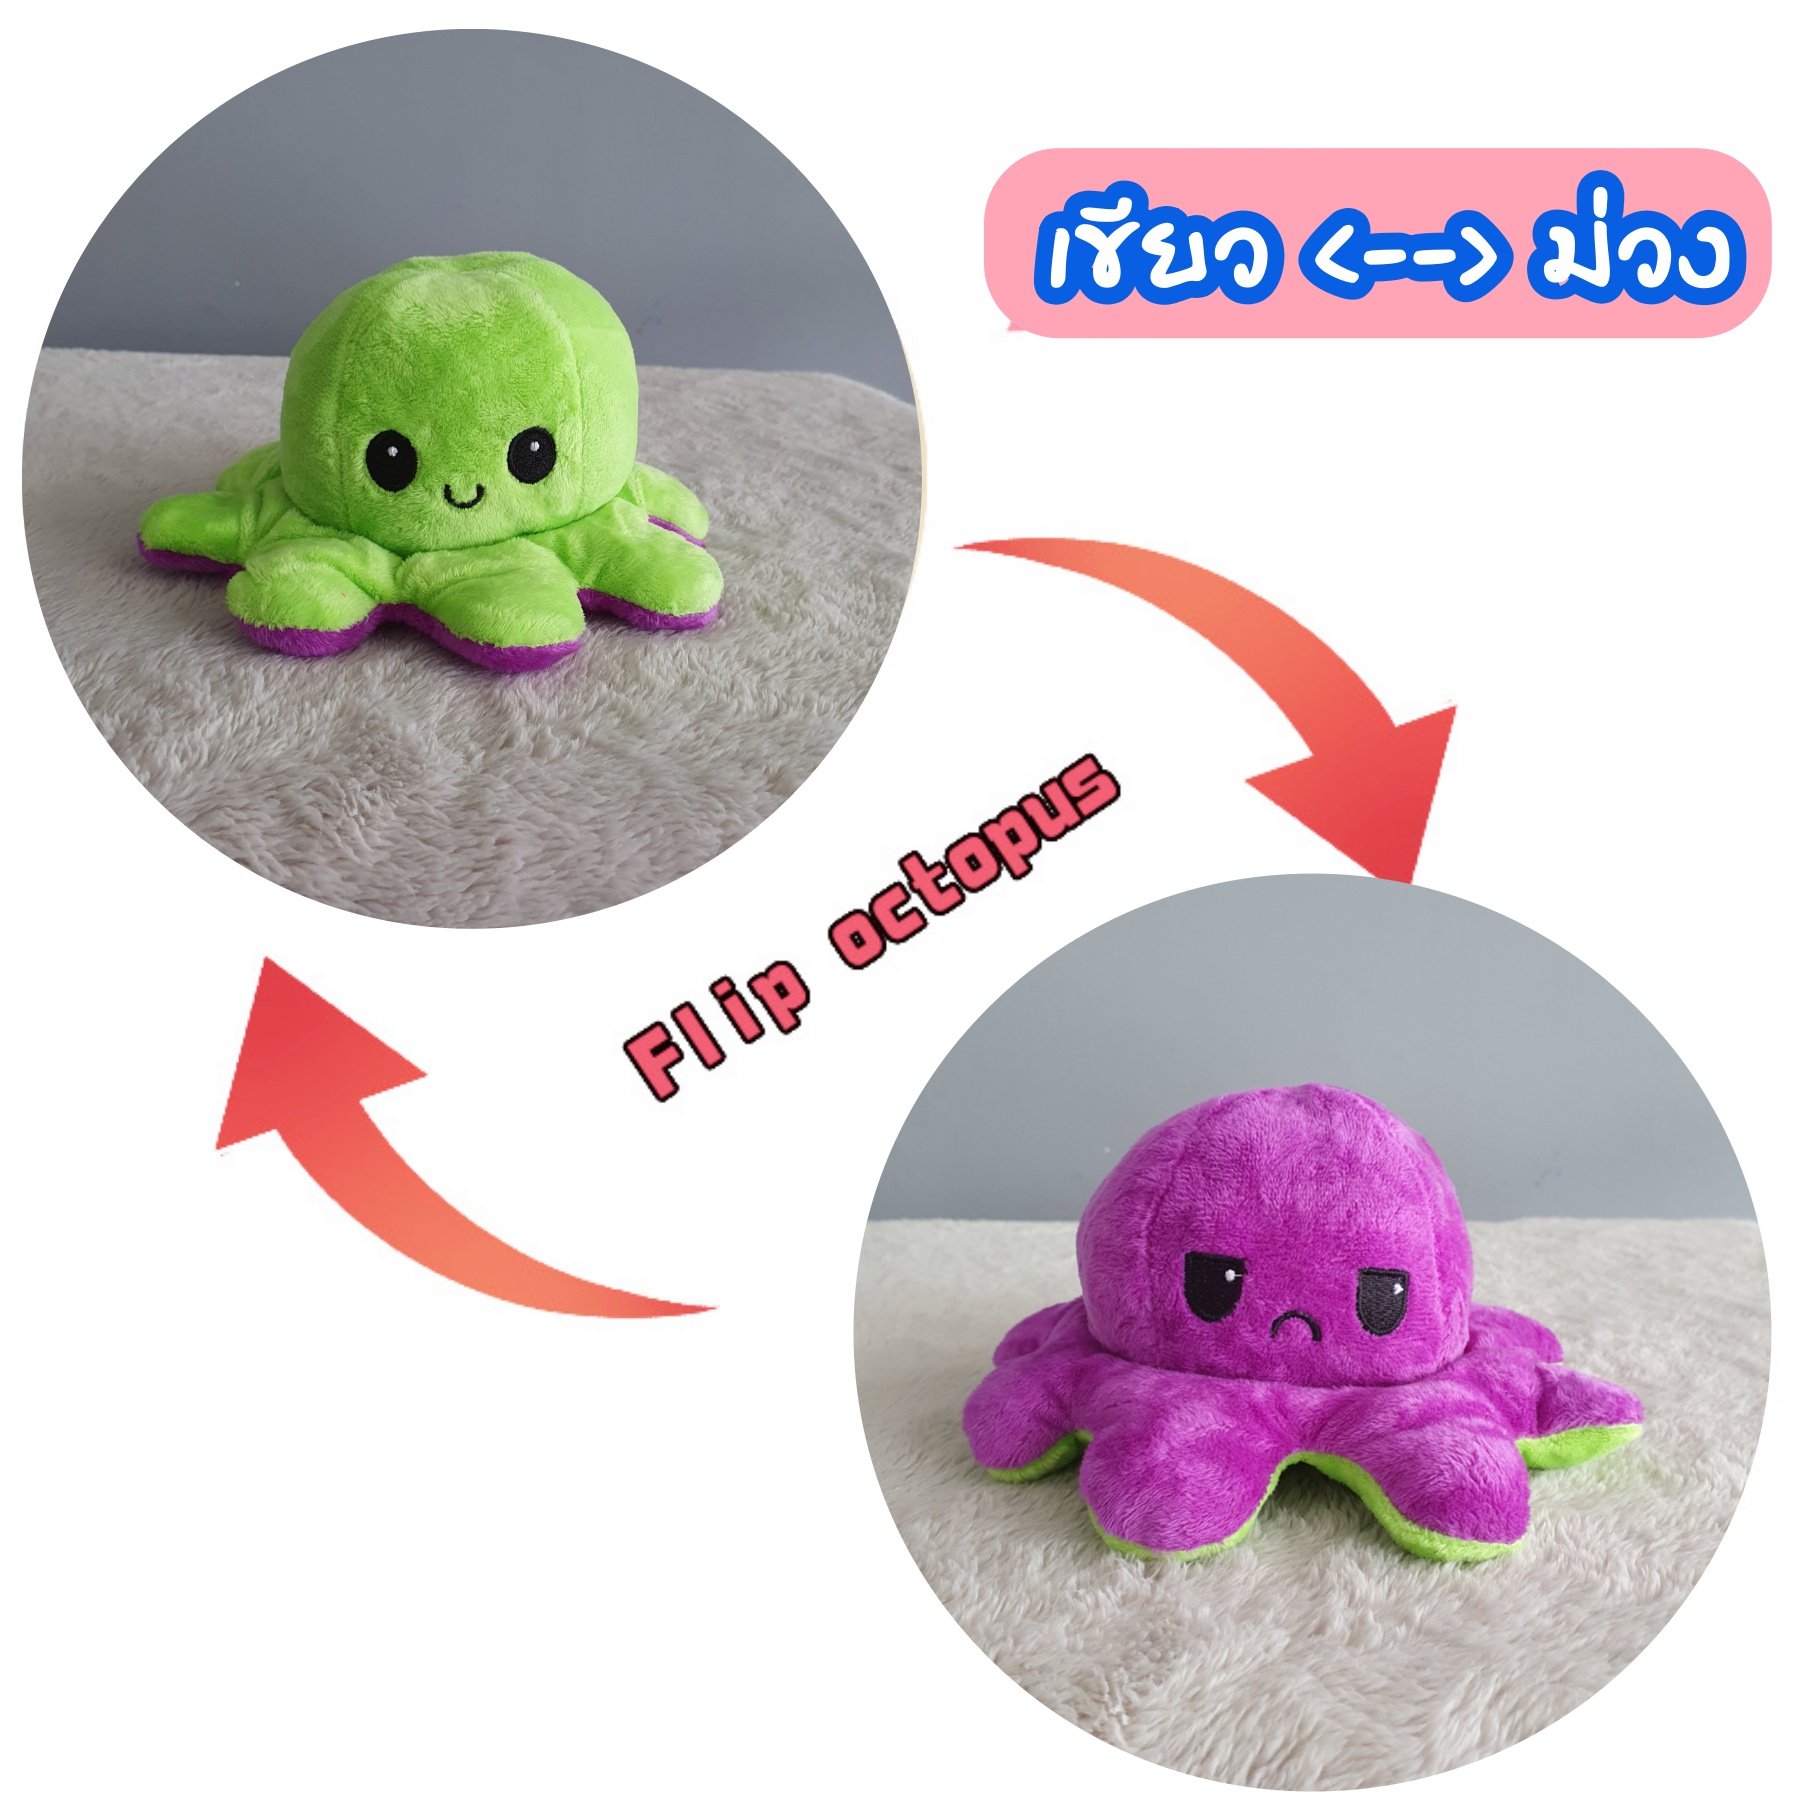 ถูกที่สุด ตุ๊กตาปลาหมึก 10*19cm ตุ๊กตาปลาหมึก เปลี่ยนสี เปลี่ยนอารมณ์ ดังมากใน tiktok flip octopus alicolly